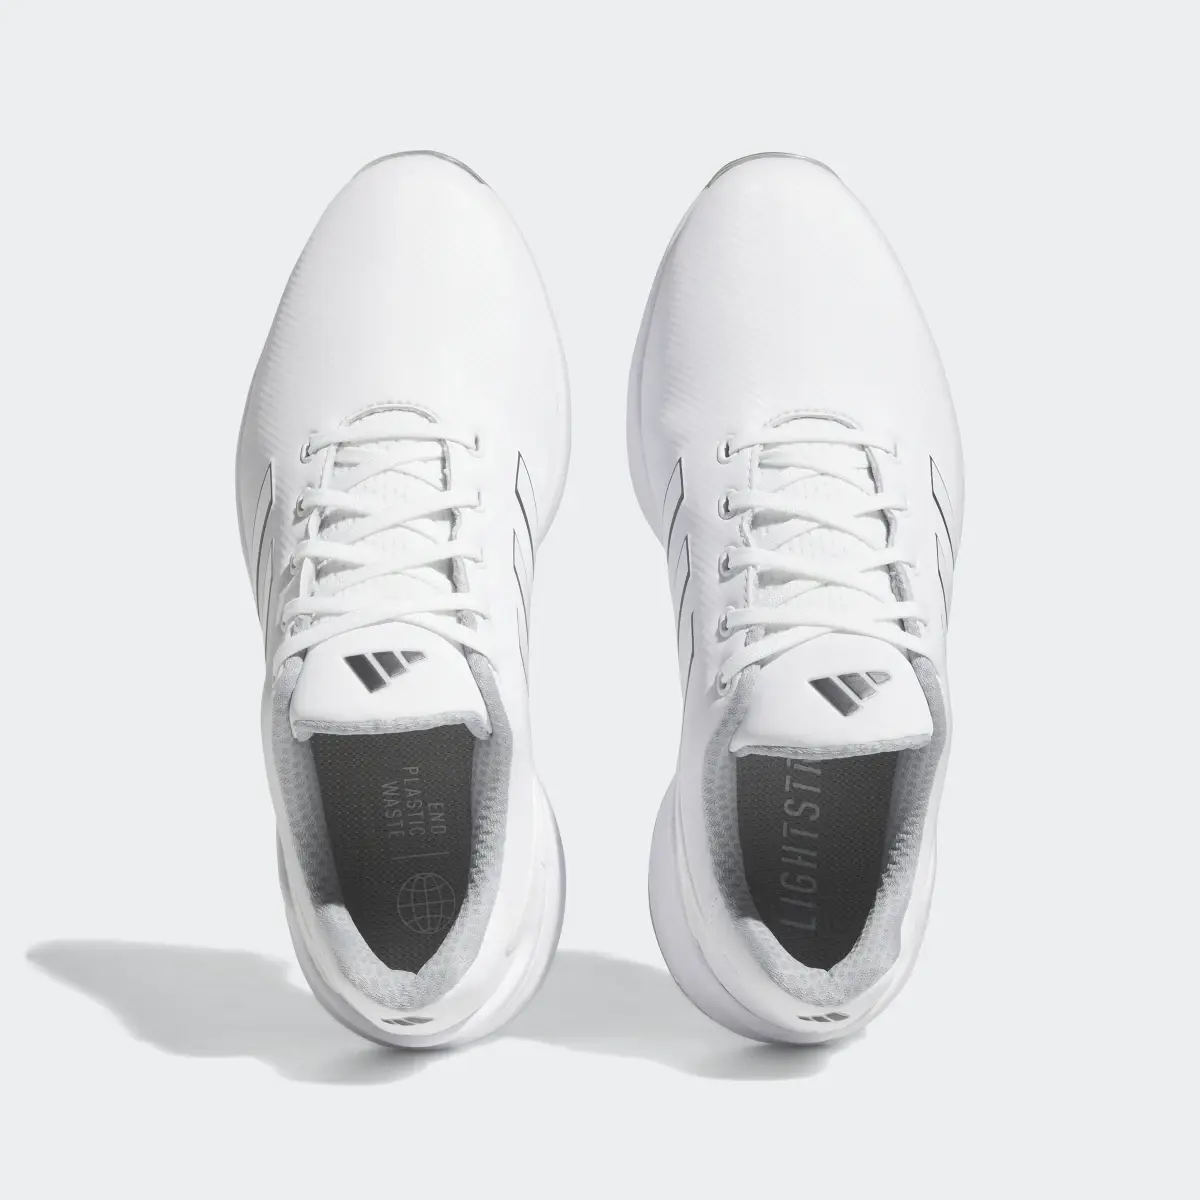 Adidas ZG23 Golf Shoes. 3